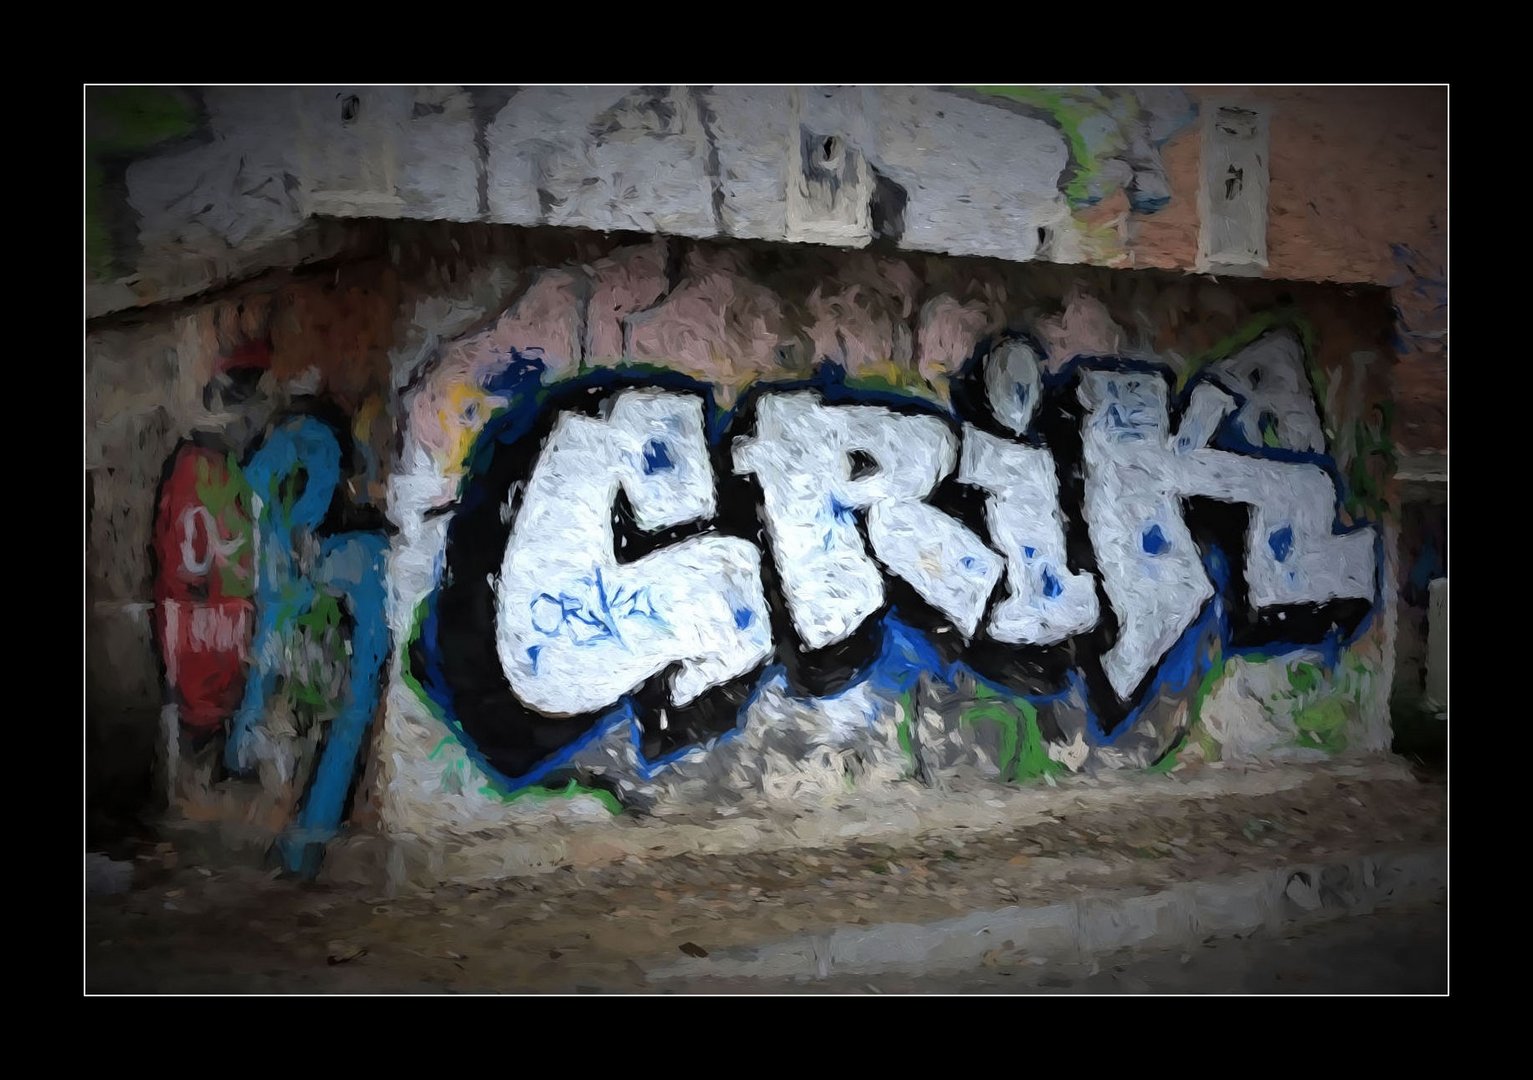 *Graffiti *